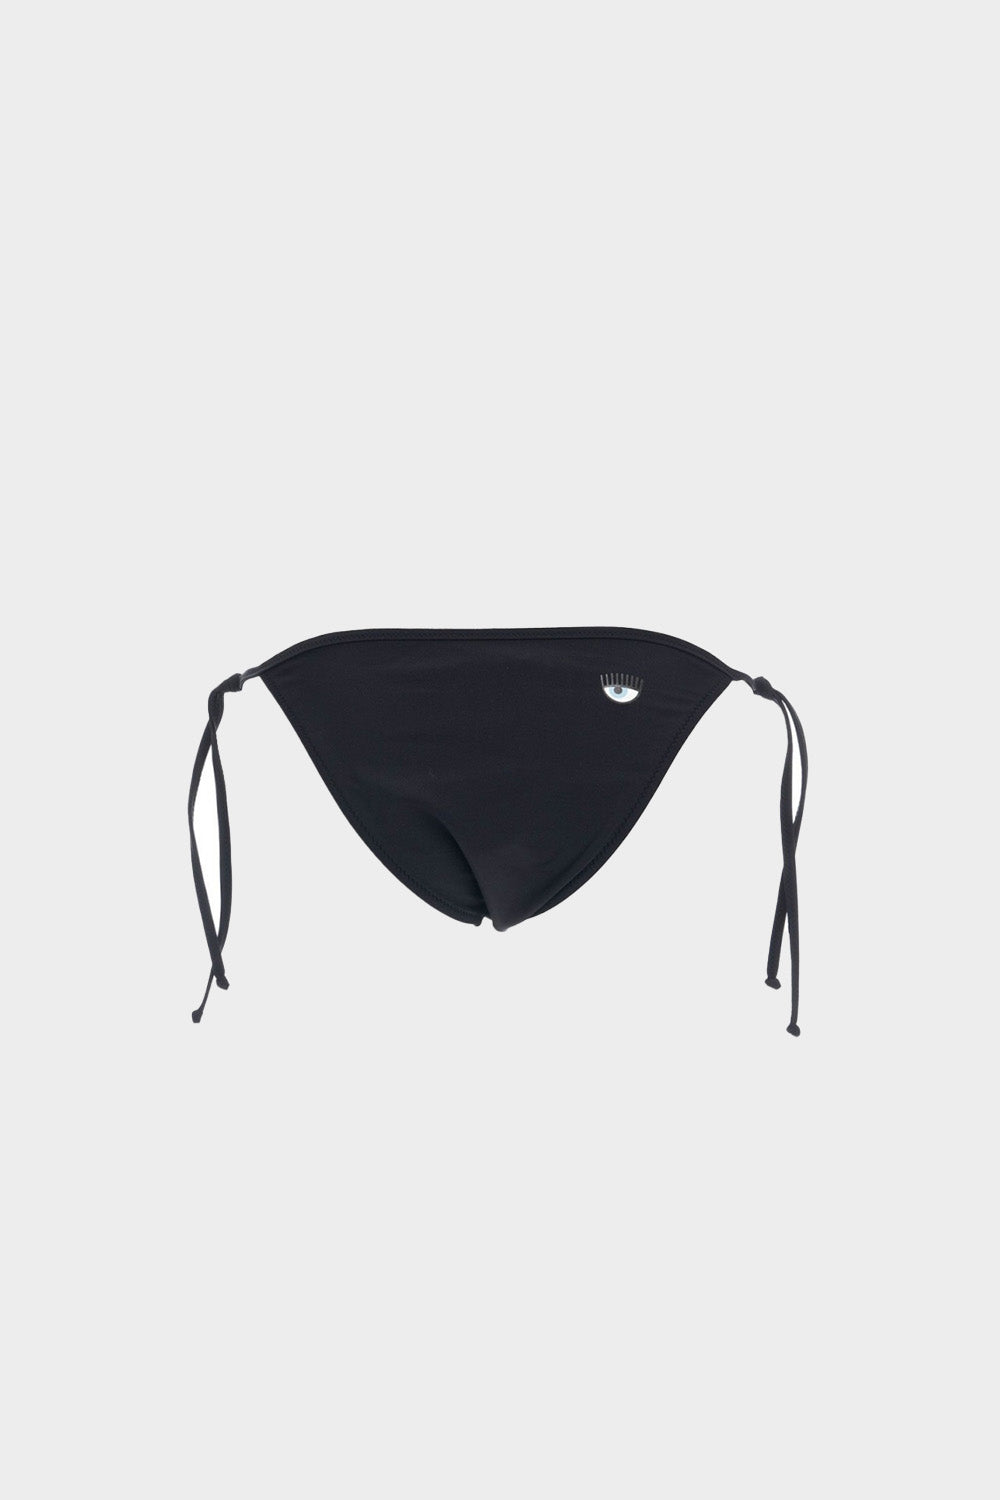 בגד ים חלק תחתון לנשים בצבע שחור CHIARA FERRAGNI CHIARA FERRAGNI Vendome online | ונדום .